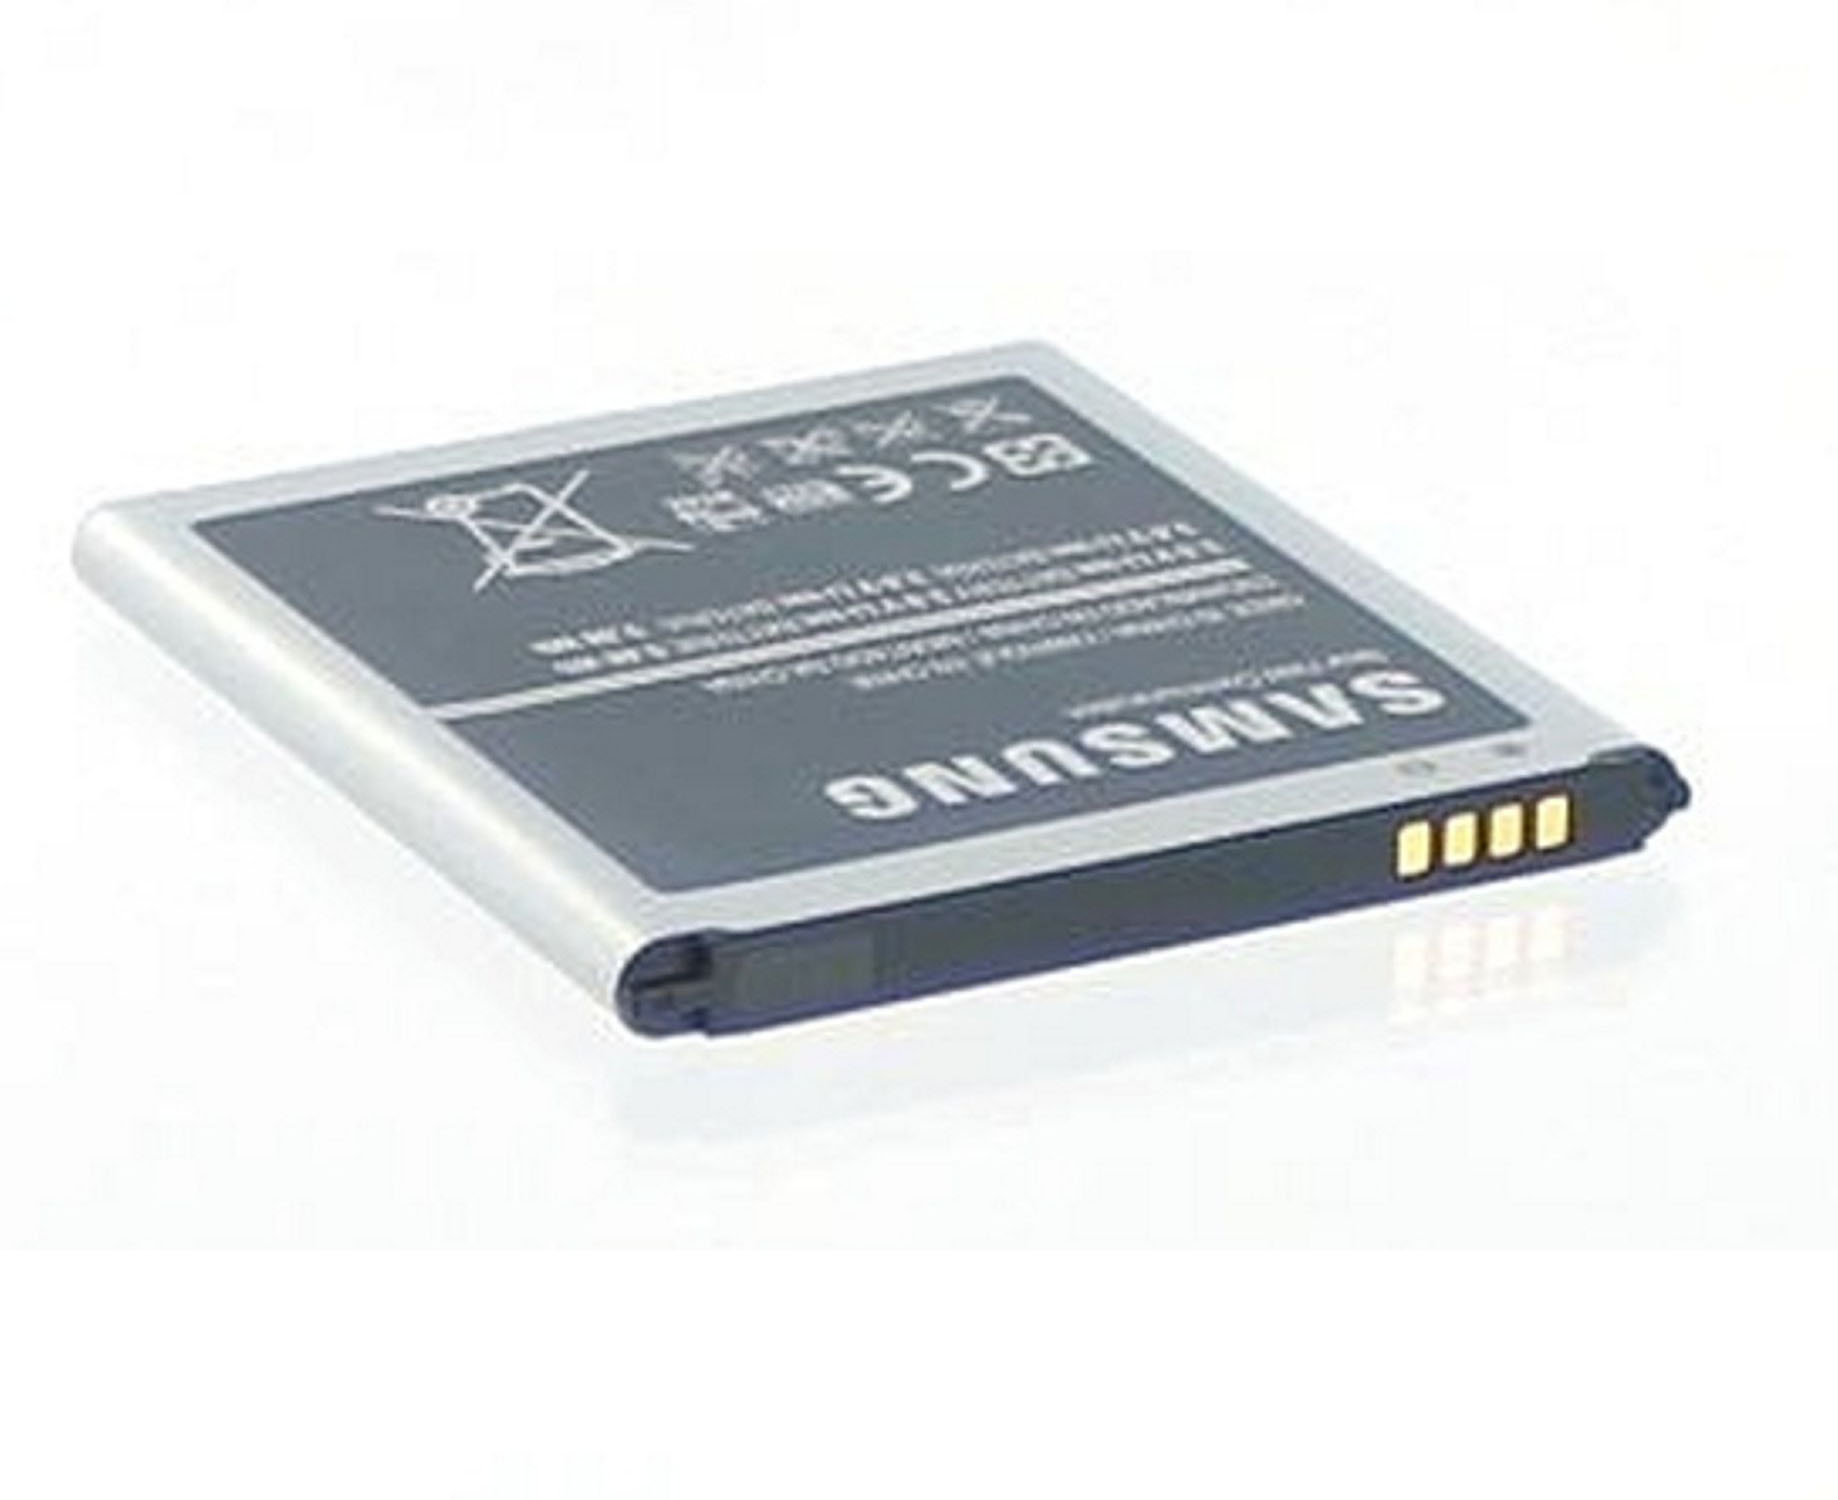 für Handy-/Smartphoneakku, S4 Li-Ion, Original Galaxy 2600 Akku Samsung mAh Volt, Li-Ion 3.7 SAMSUNG